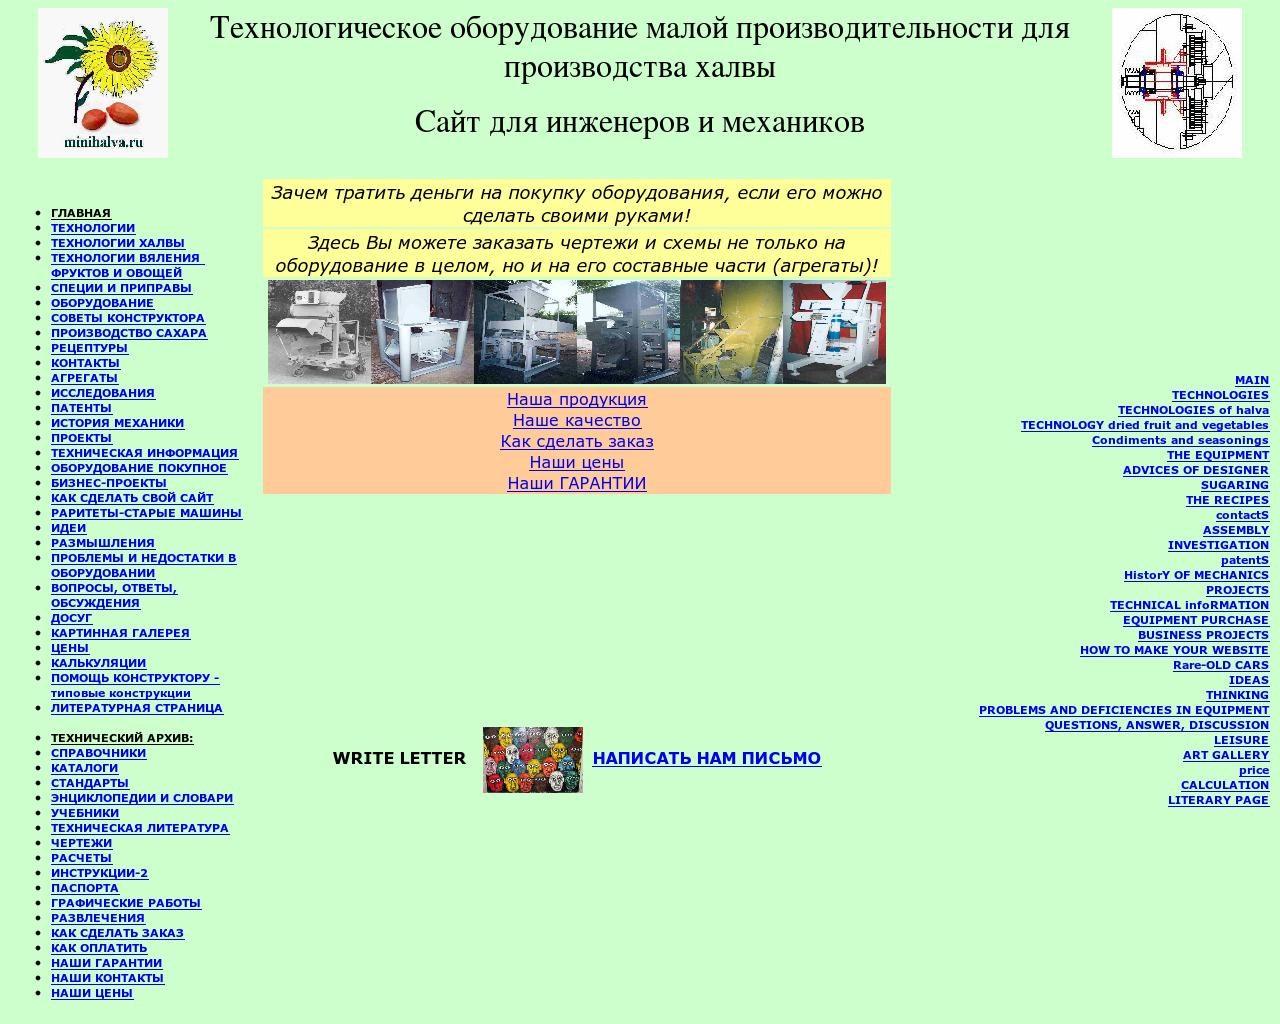 Изображение сайта minihalva.ru в разрешении 1280x1024